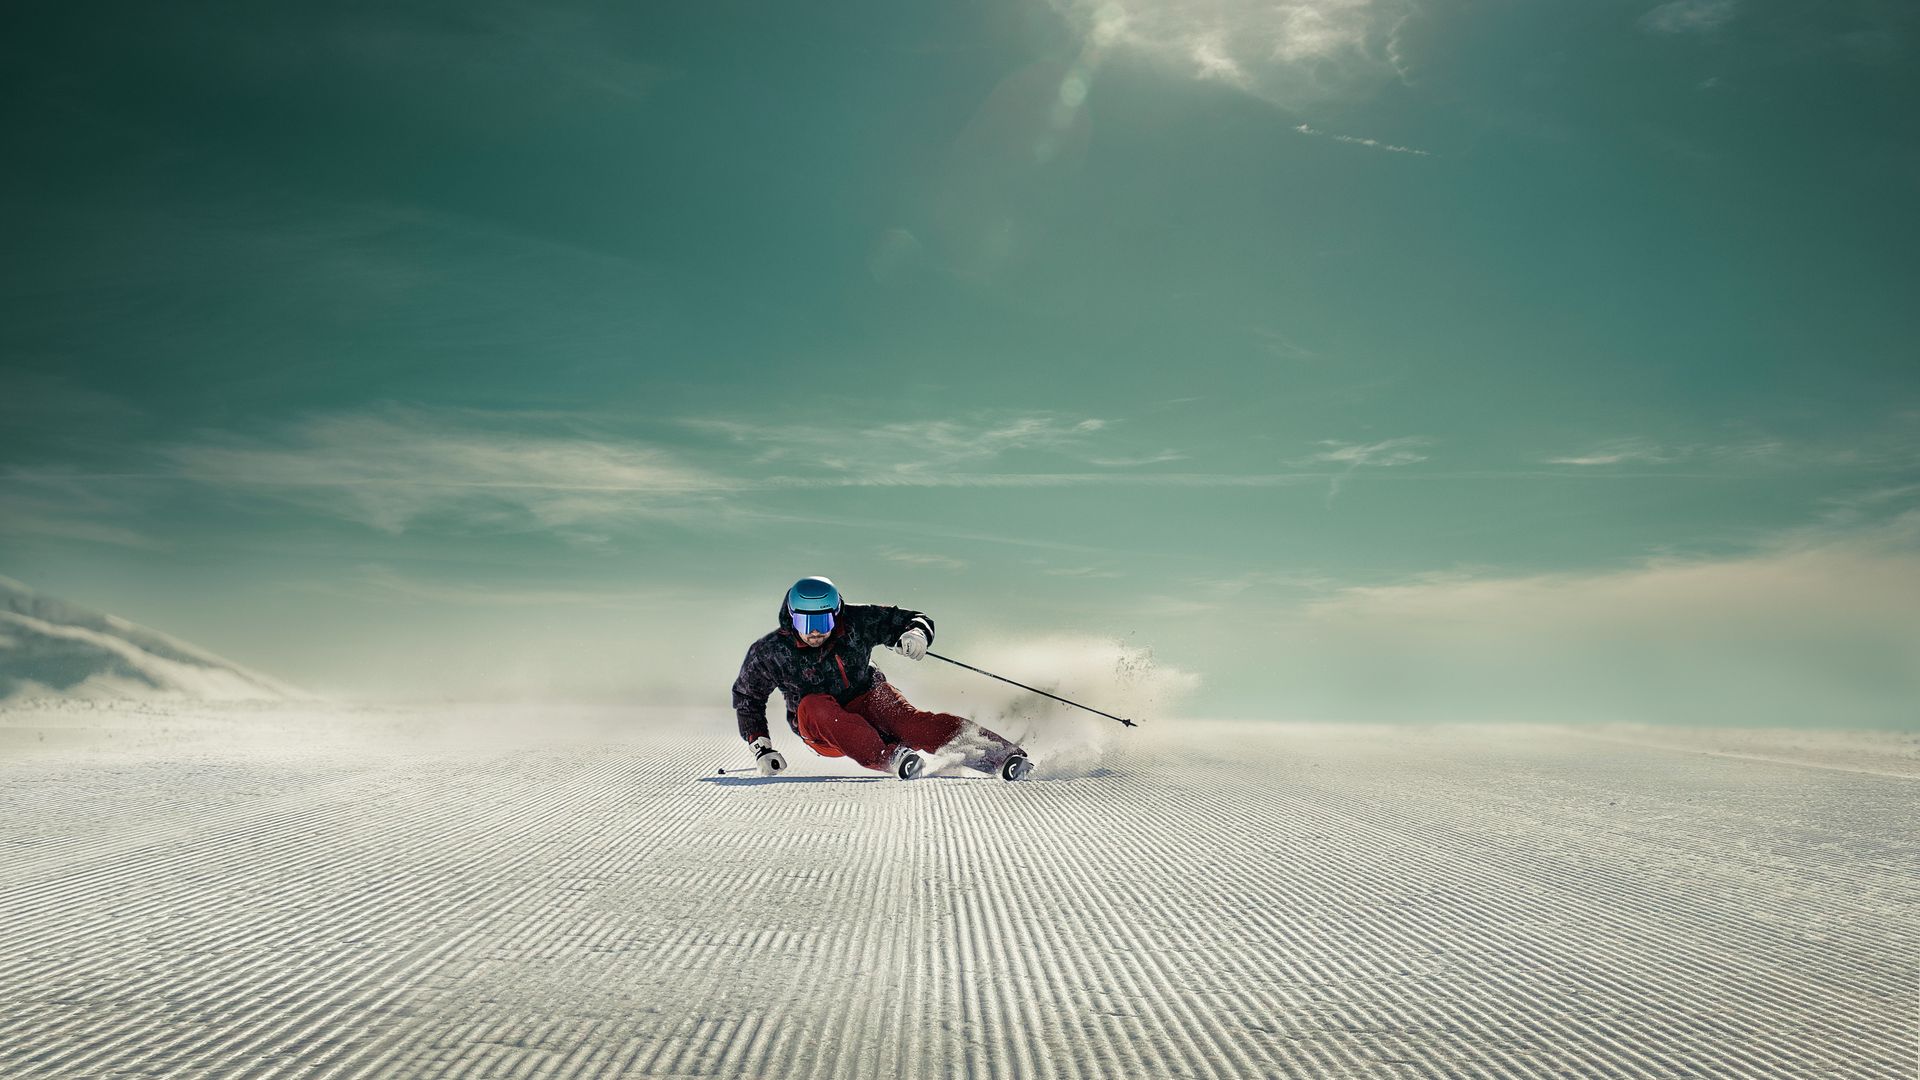 Uno sciatore sta sciando su una pista perfettamente preparata.